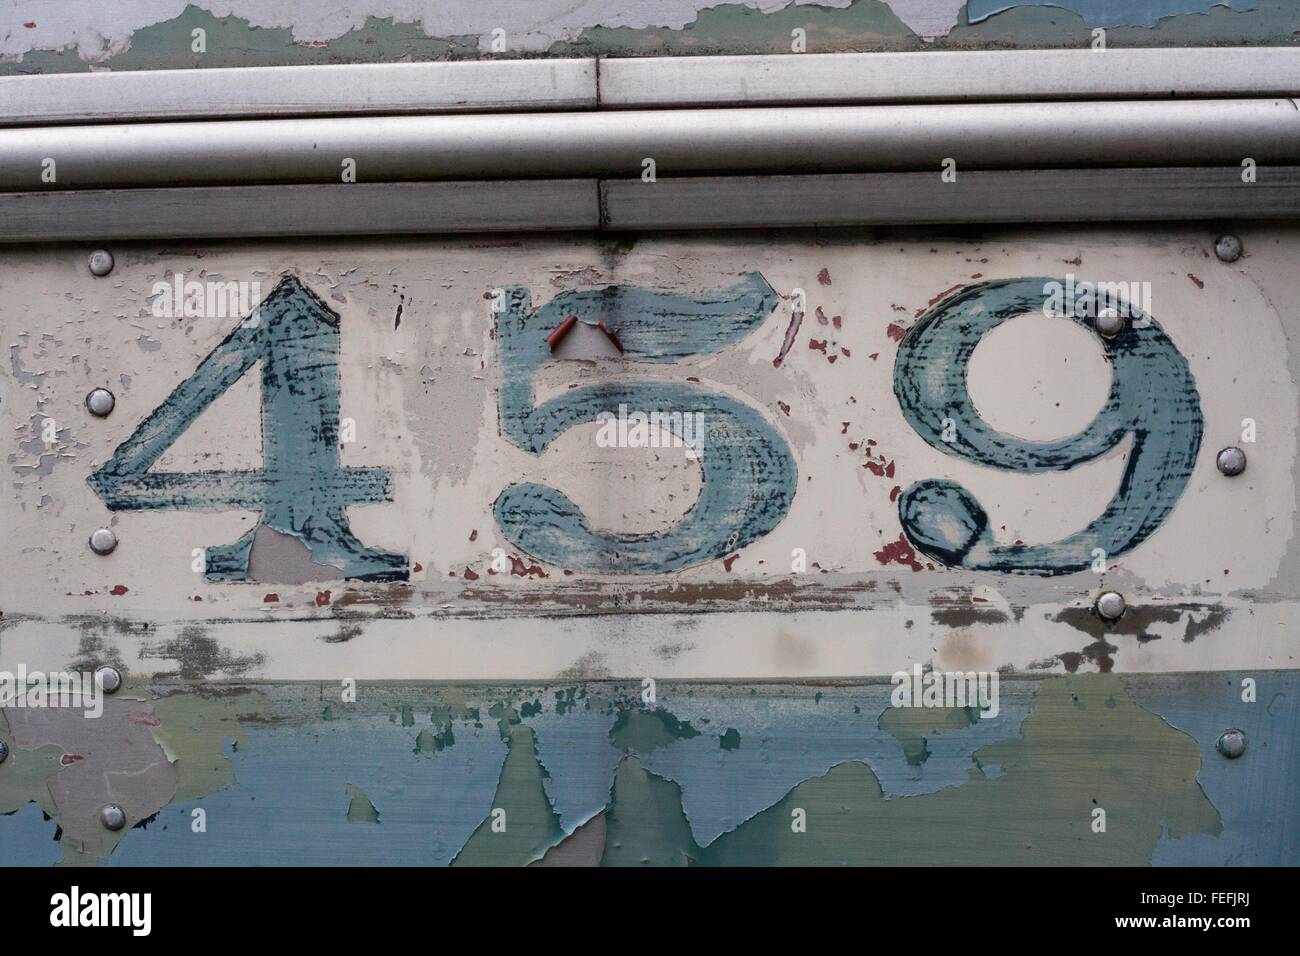 459 Zahlen auf einem alten Brill Trolley Bus, abgenutzte verblasst und zerkratzt, korrodierte und oxidierte blauer Farbe, schäbig aus Zeit verwittert Stockfoto